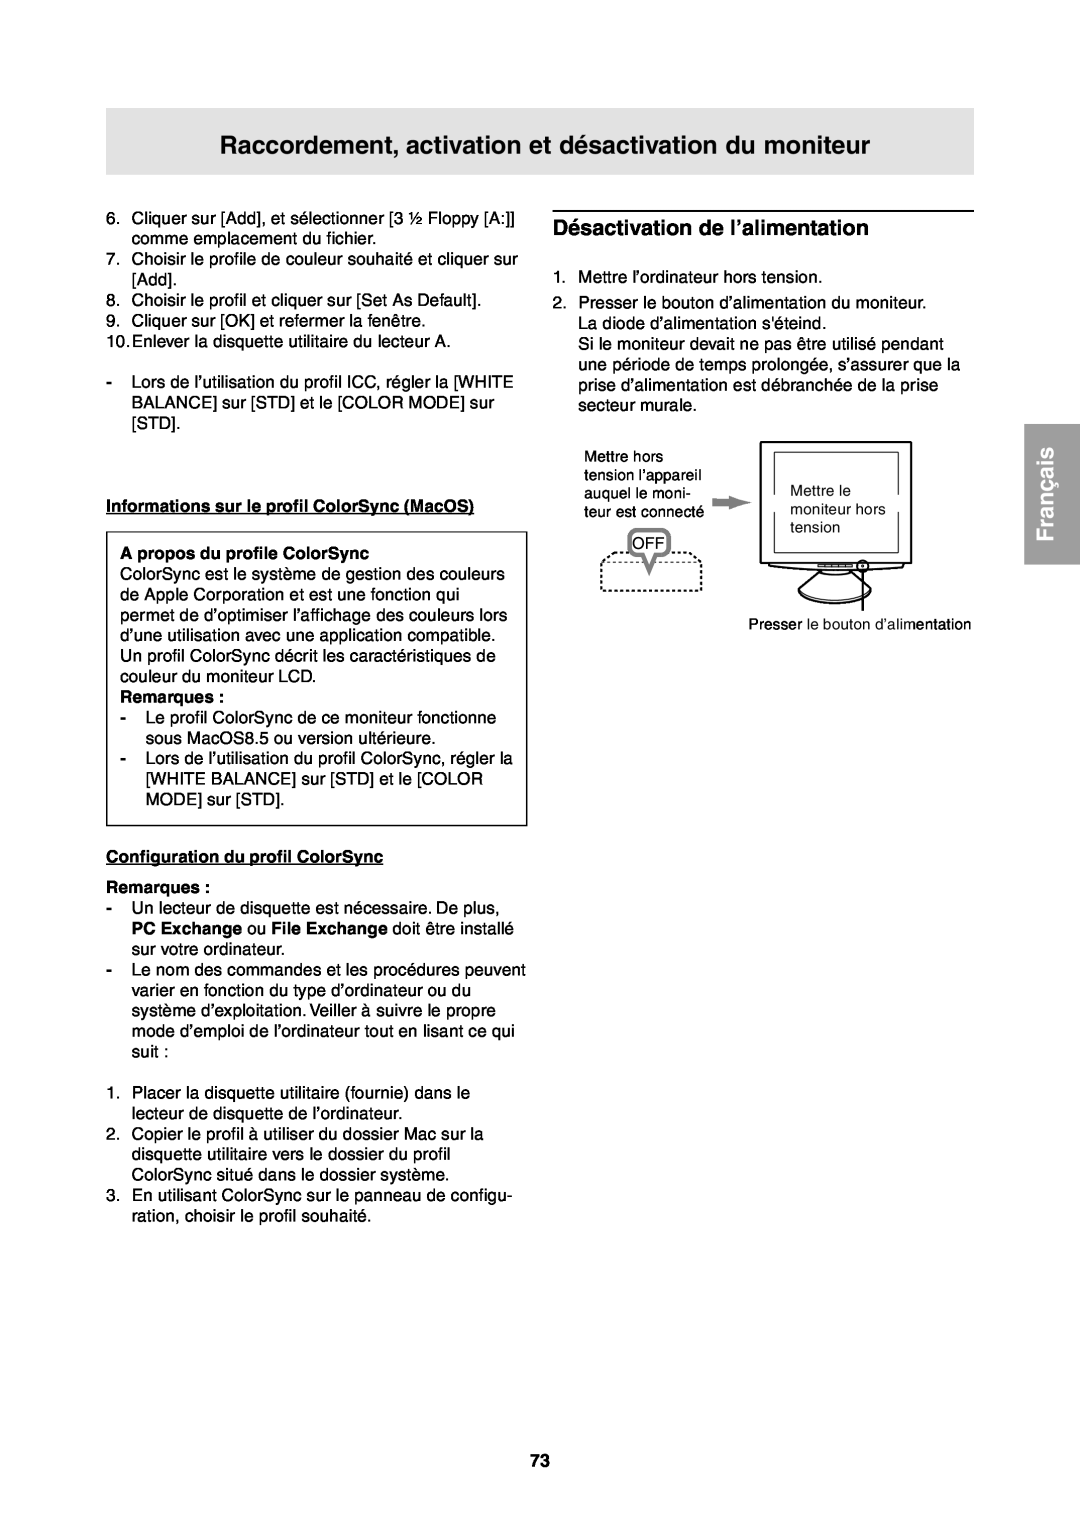 Sharp LL-T1811W Désactivation de l’alimentation, Informations sur le profil ColorSync MacOS, A propos du profile ColorSync 